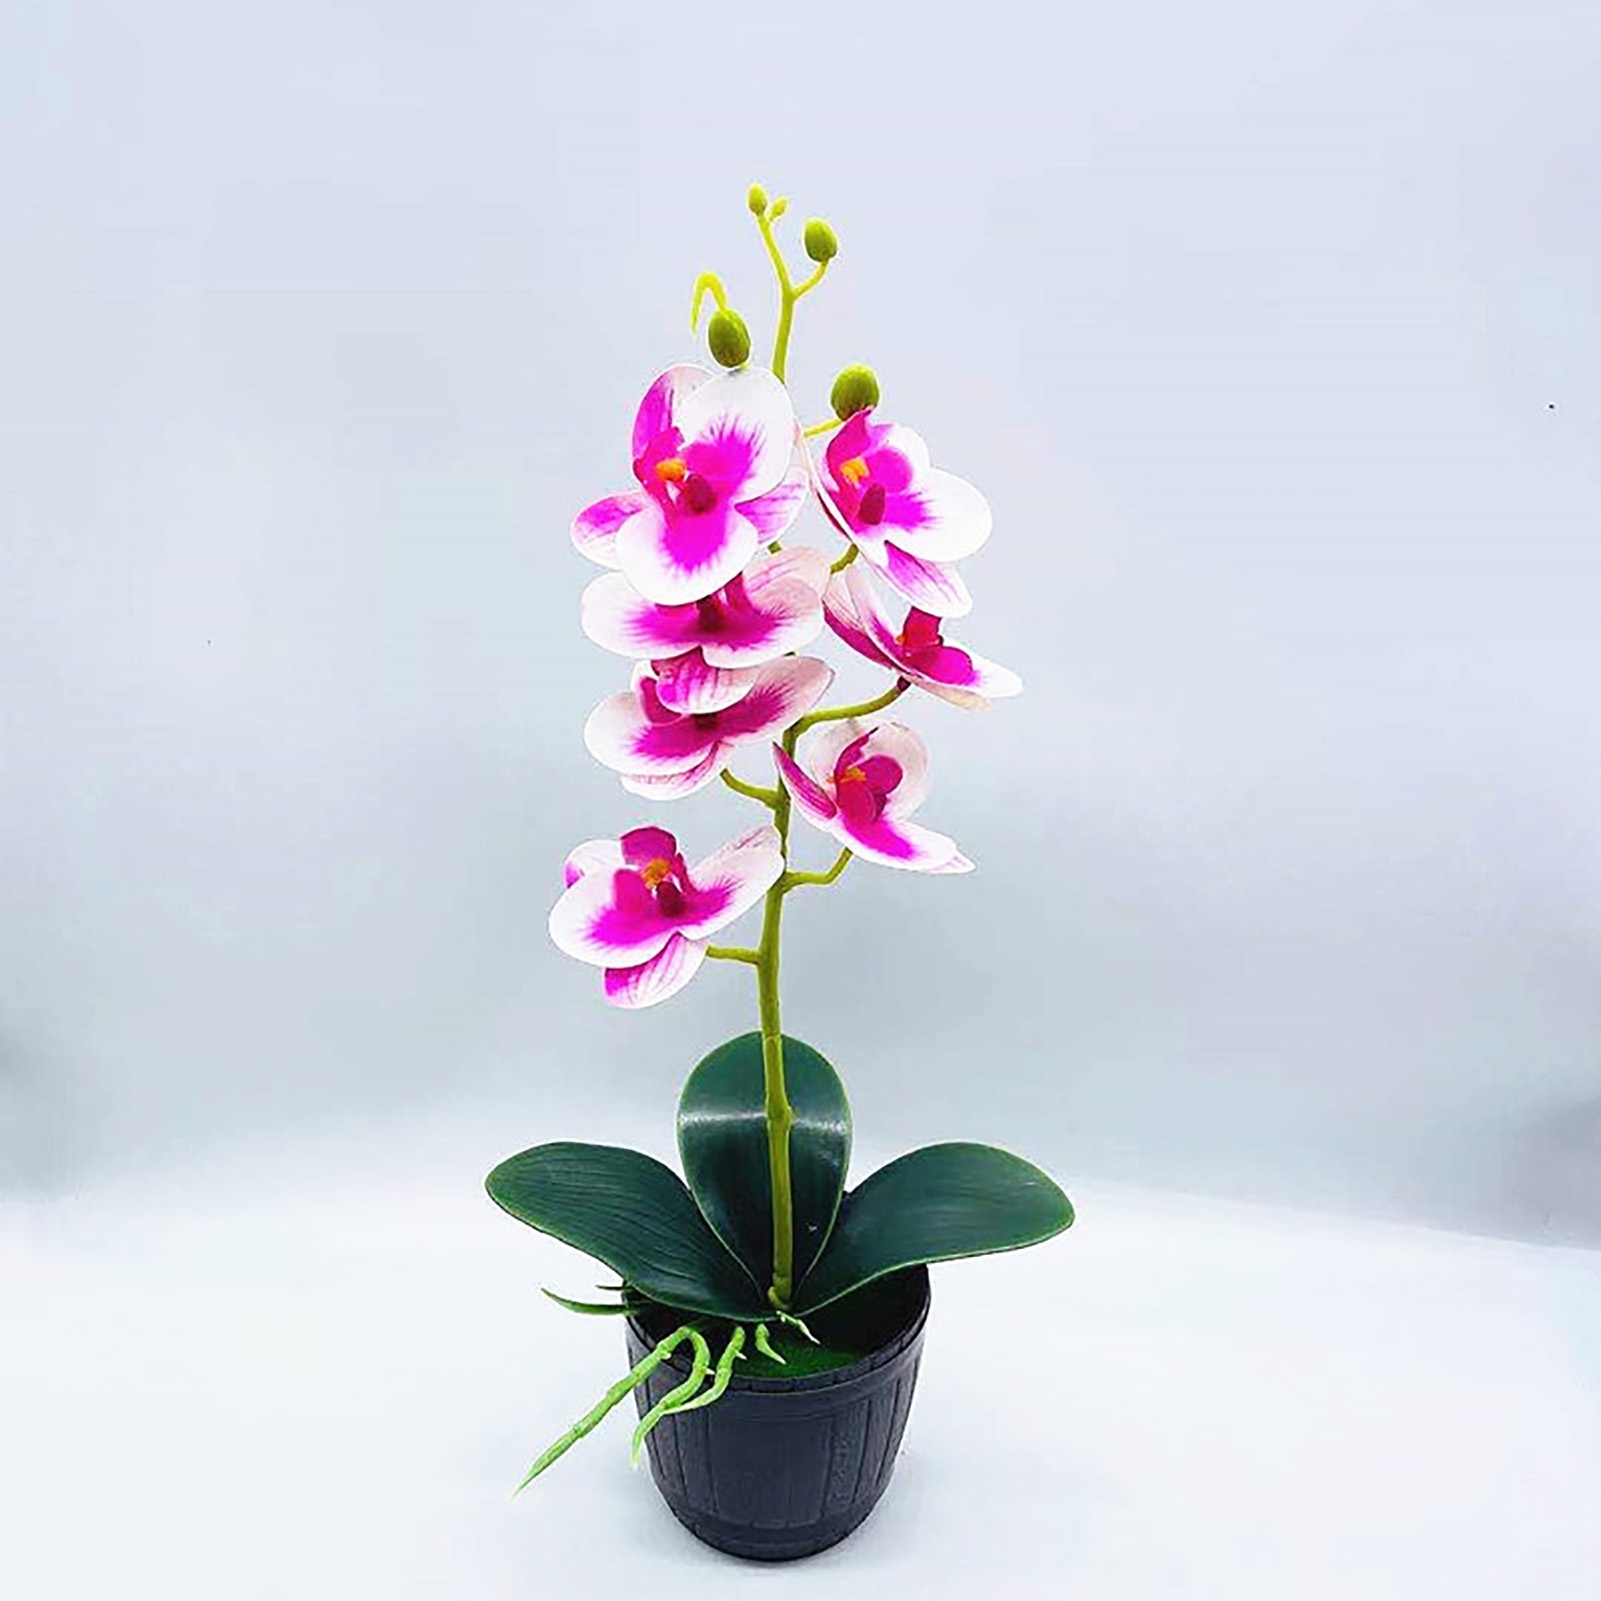 Кашпо для орхидей декоративное. Орхидея в горшке в подарок. Орхидея в горшке белая с фиолетом. Орхидея в кашпо китайском. Орхидея в горшке авито